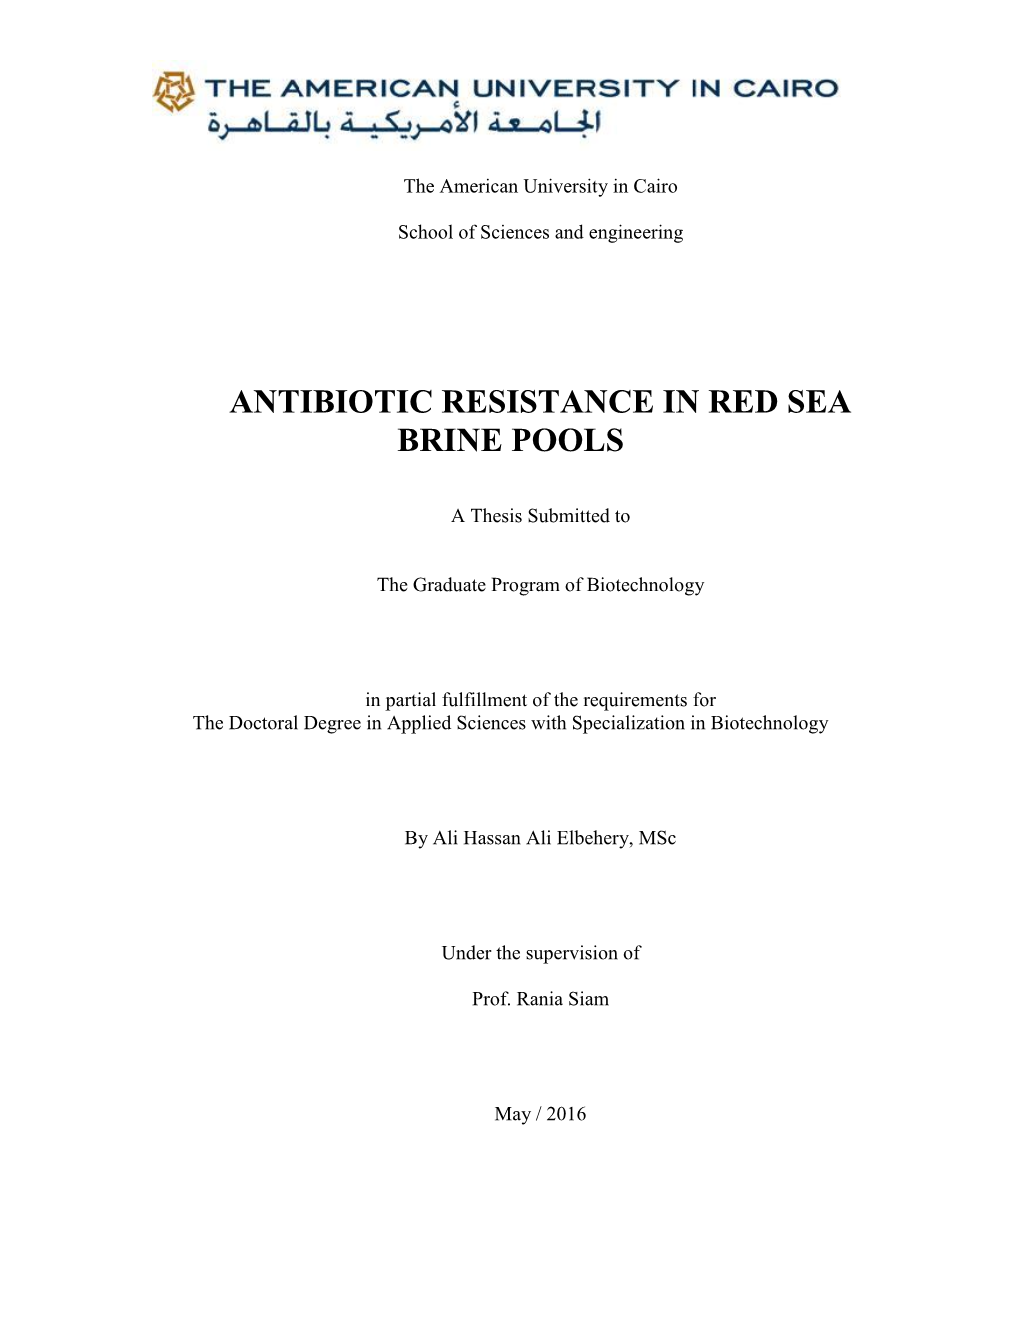 Antibiotic Resistance in Red Sea Brine Pools